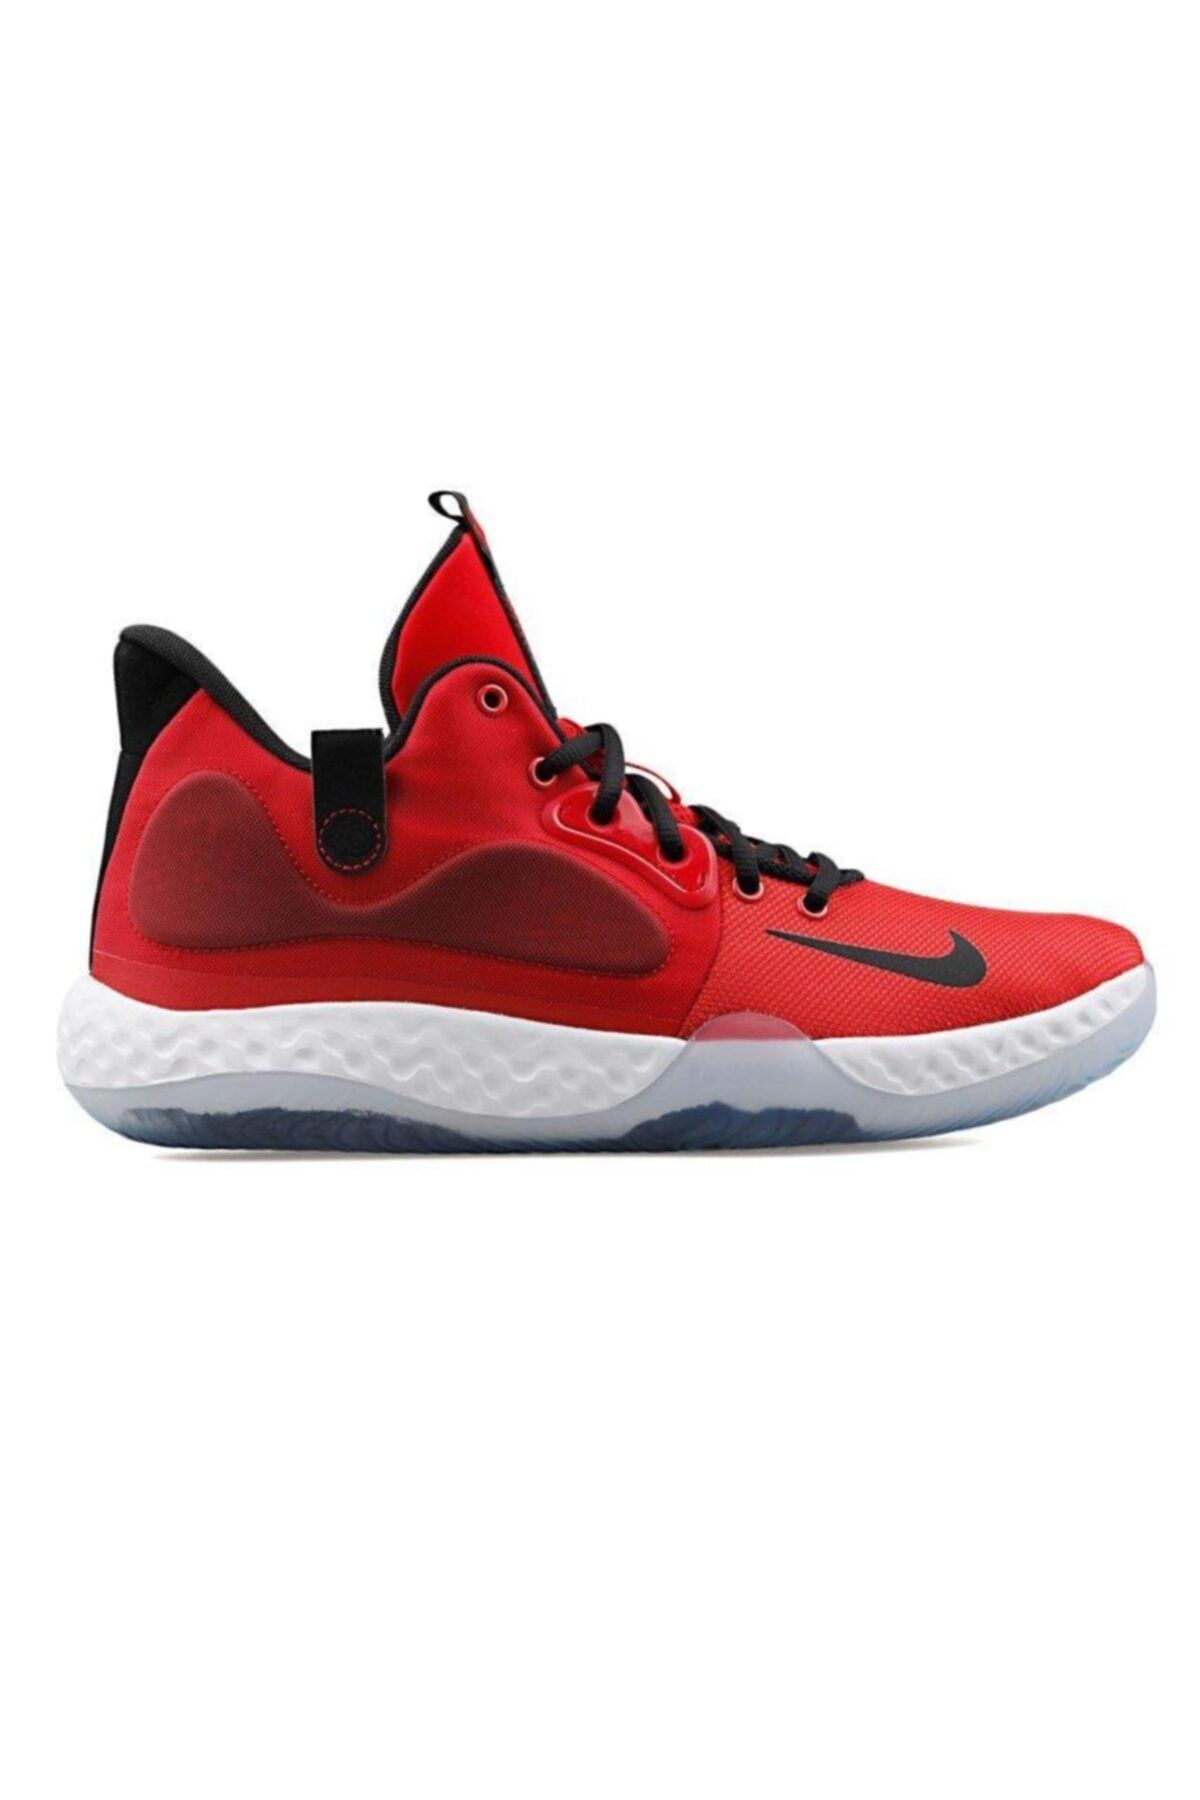 Nike Kd Trey 5 Vıı At1200-600 Basketbol Ayakkabısı